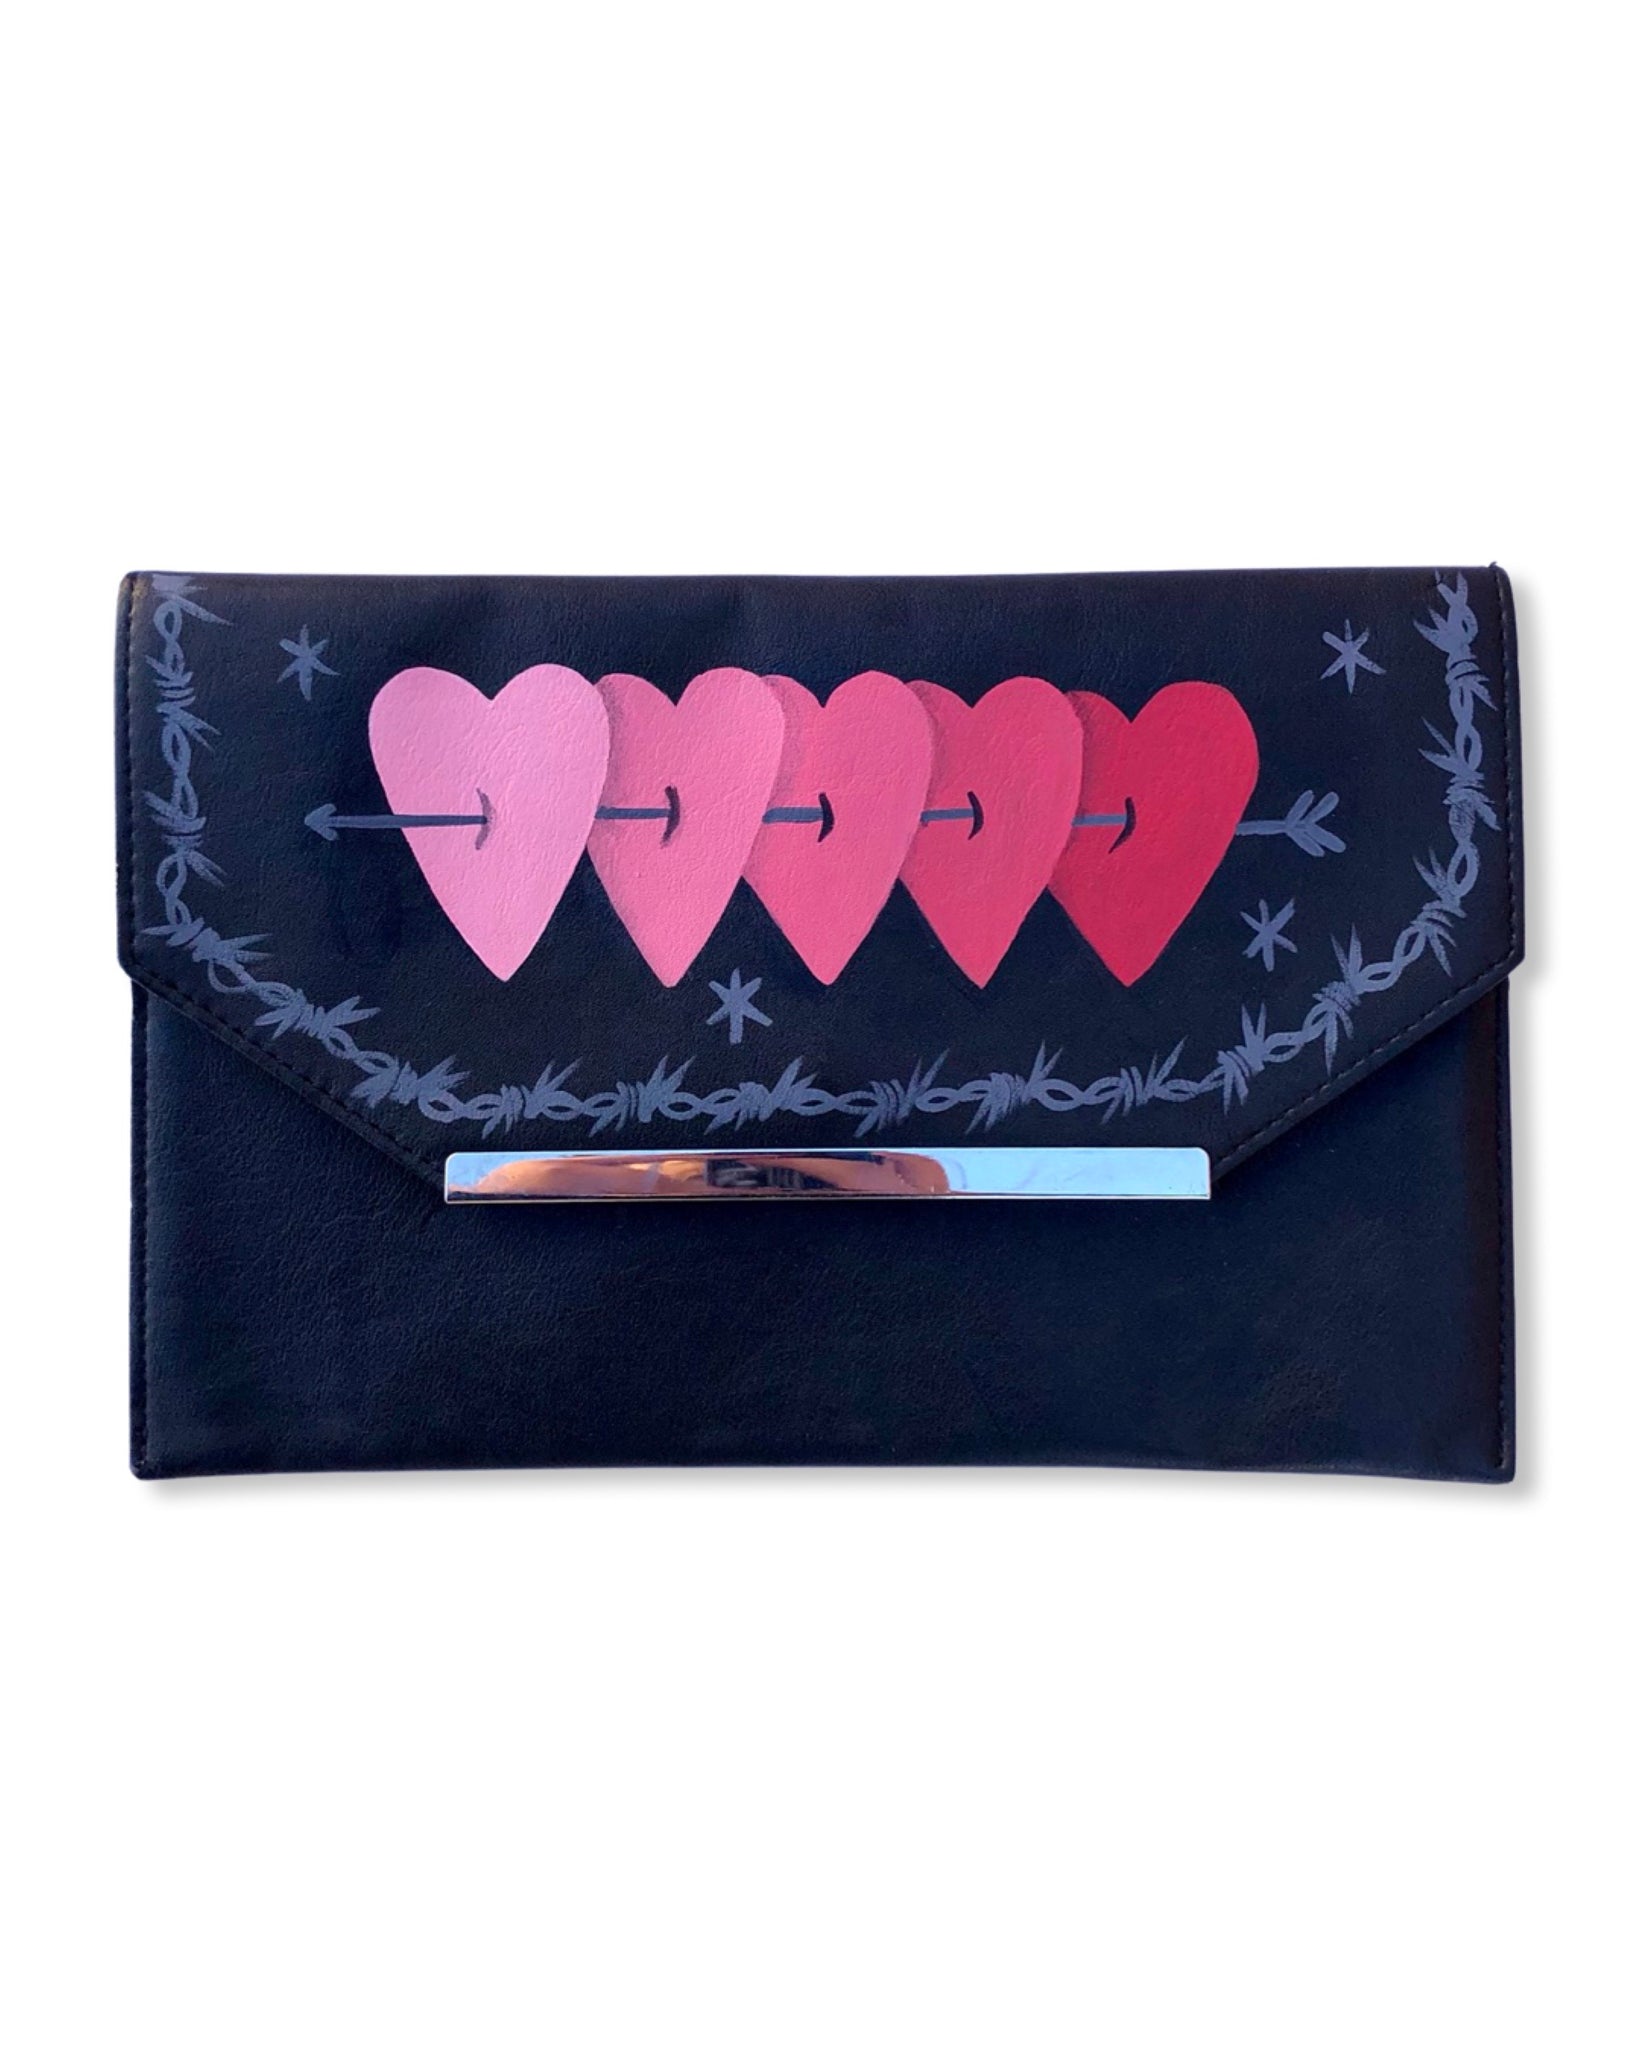 Love-Struck Bag | Red Heart Purse